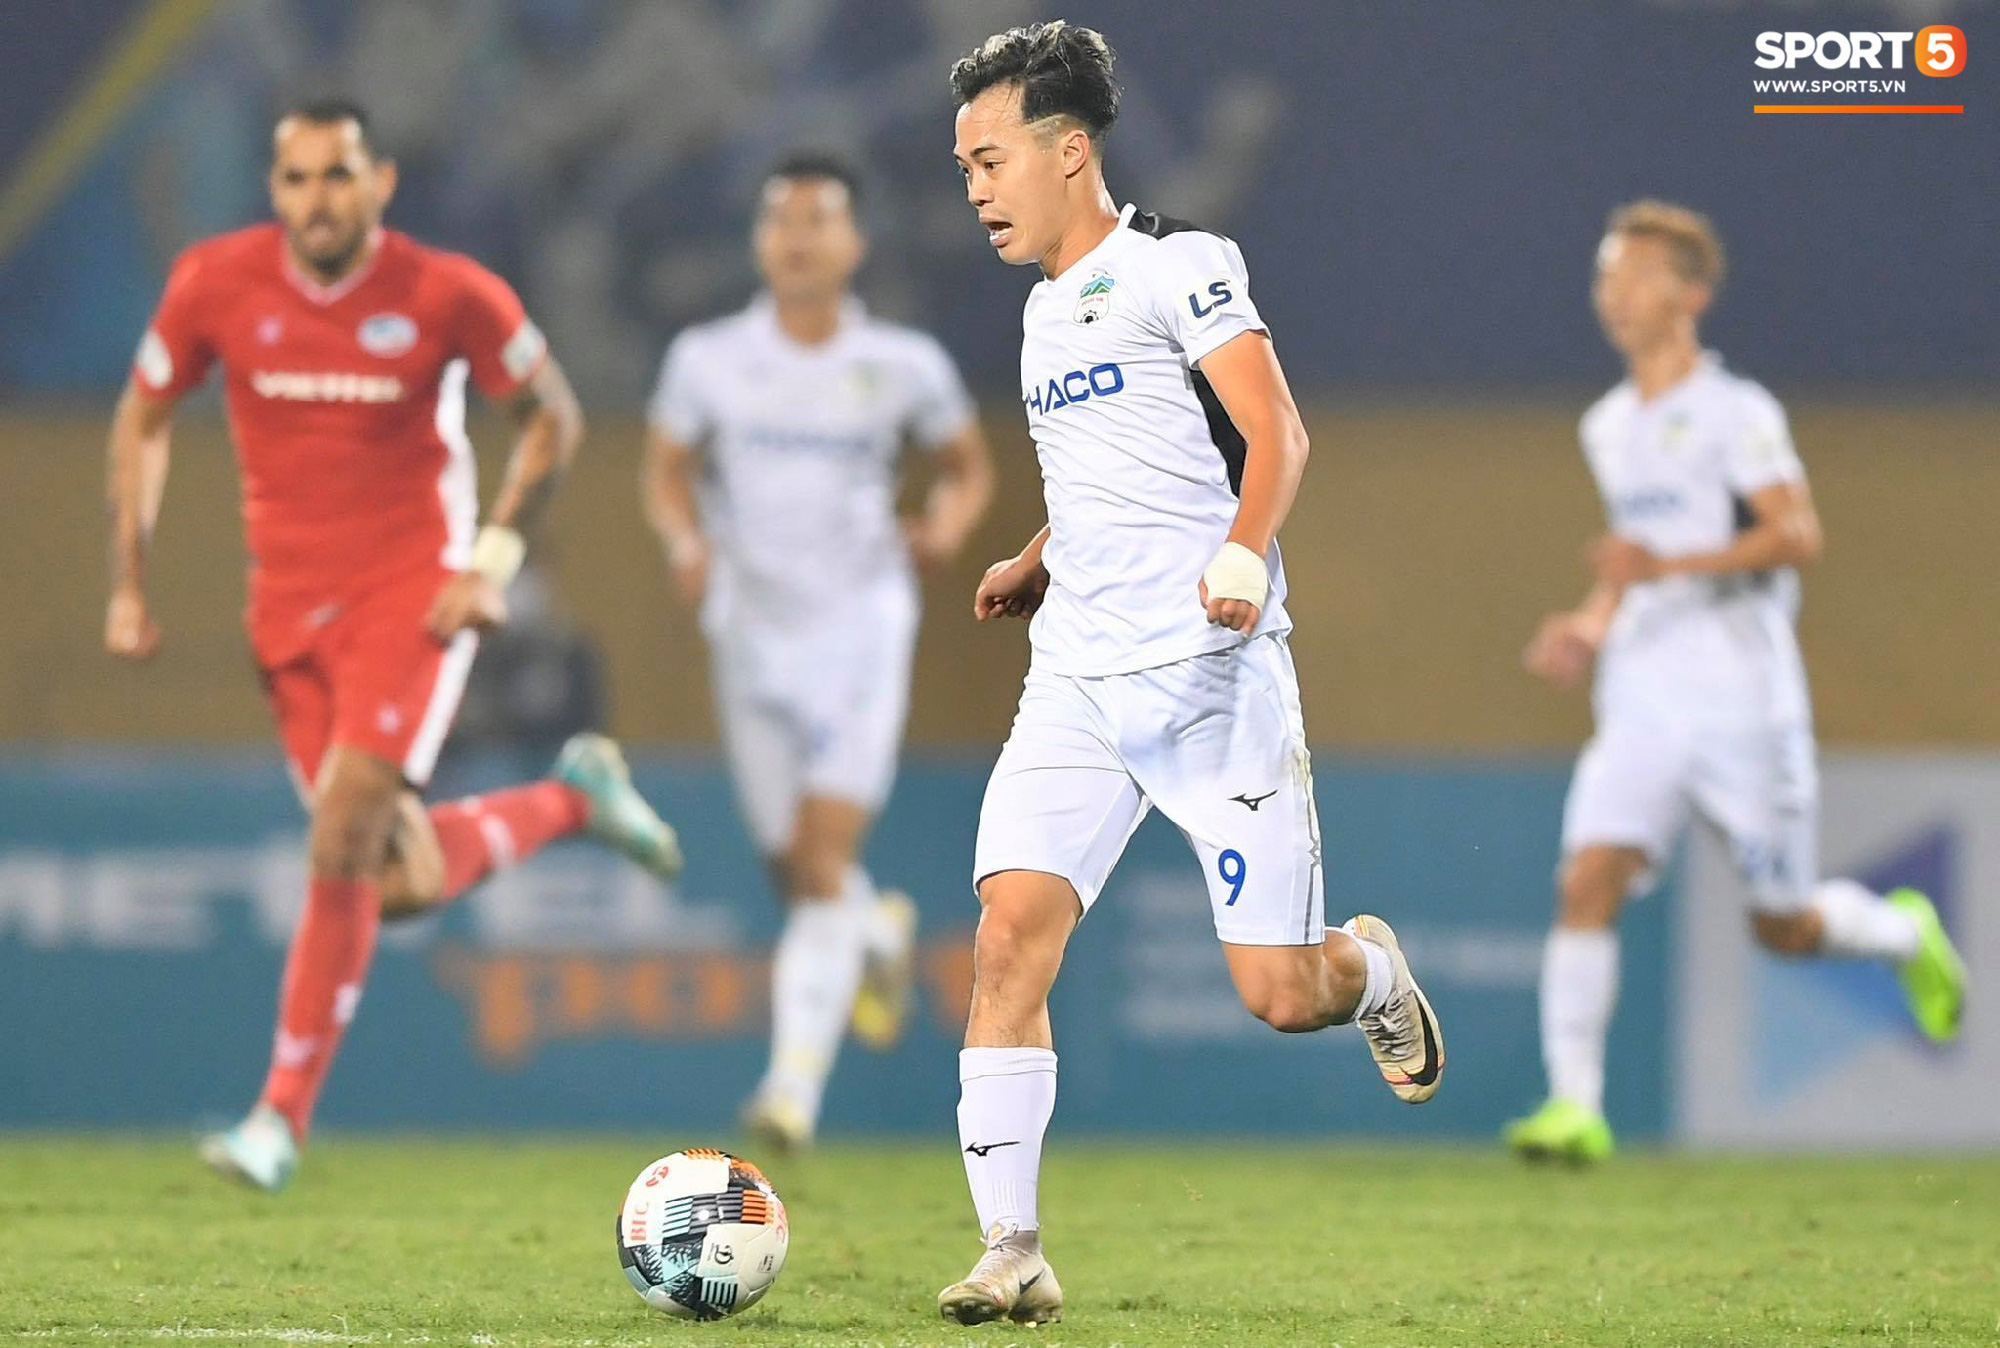 Văn Toàn nén đau, gượng cười nói chuyện với trợ lý Lee Young-jin sau trận hòa nhọc nhằn với Viettel FC - Ảnh 12.